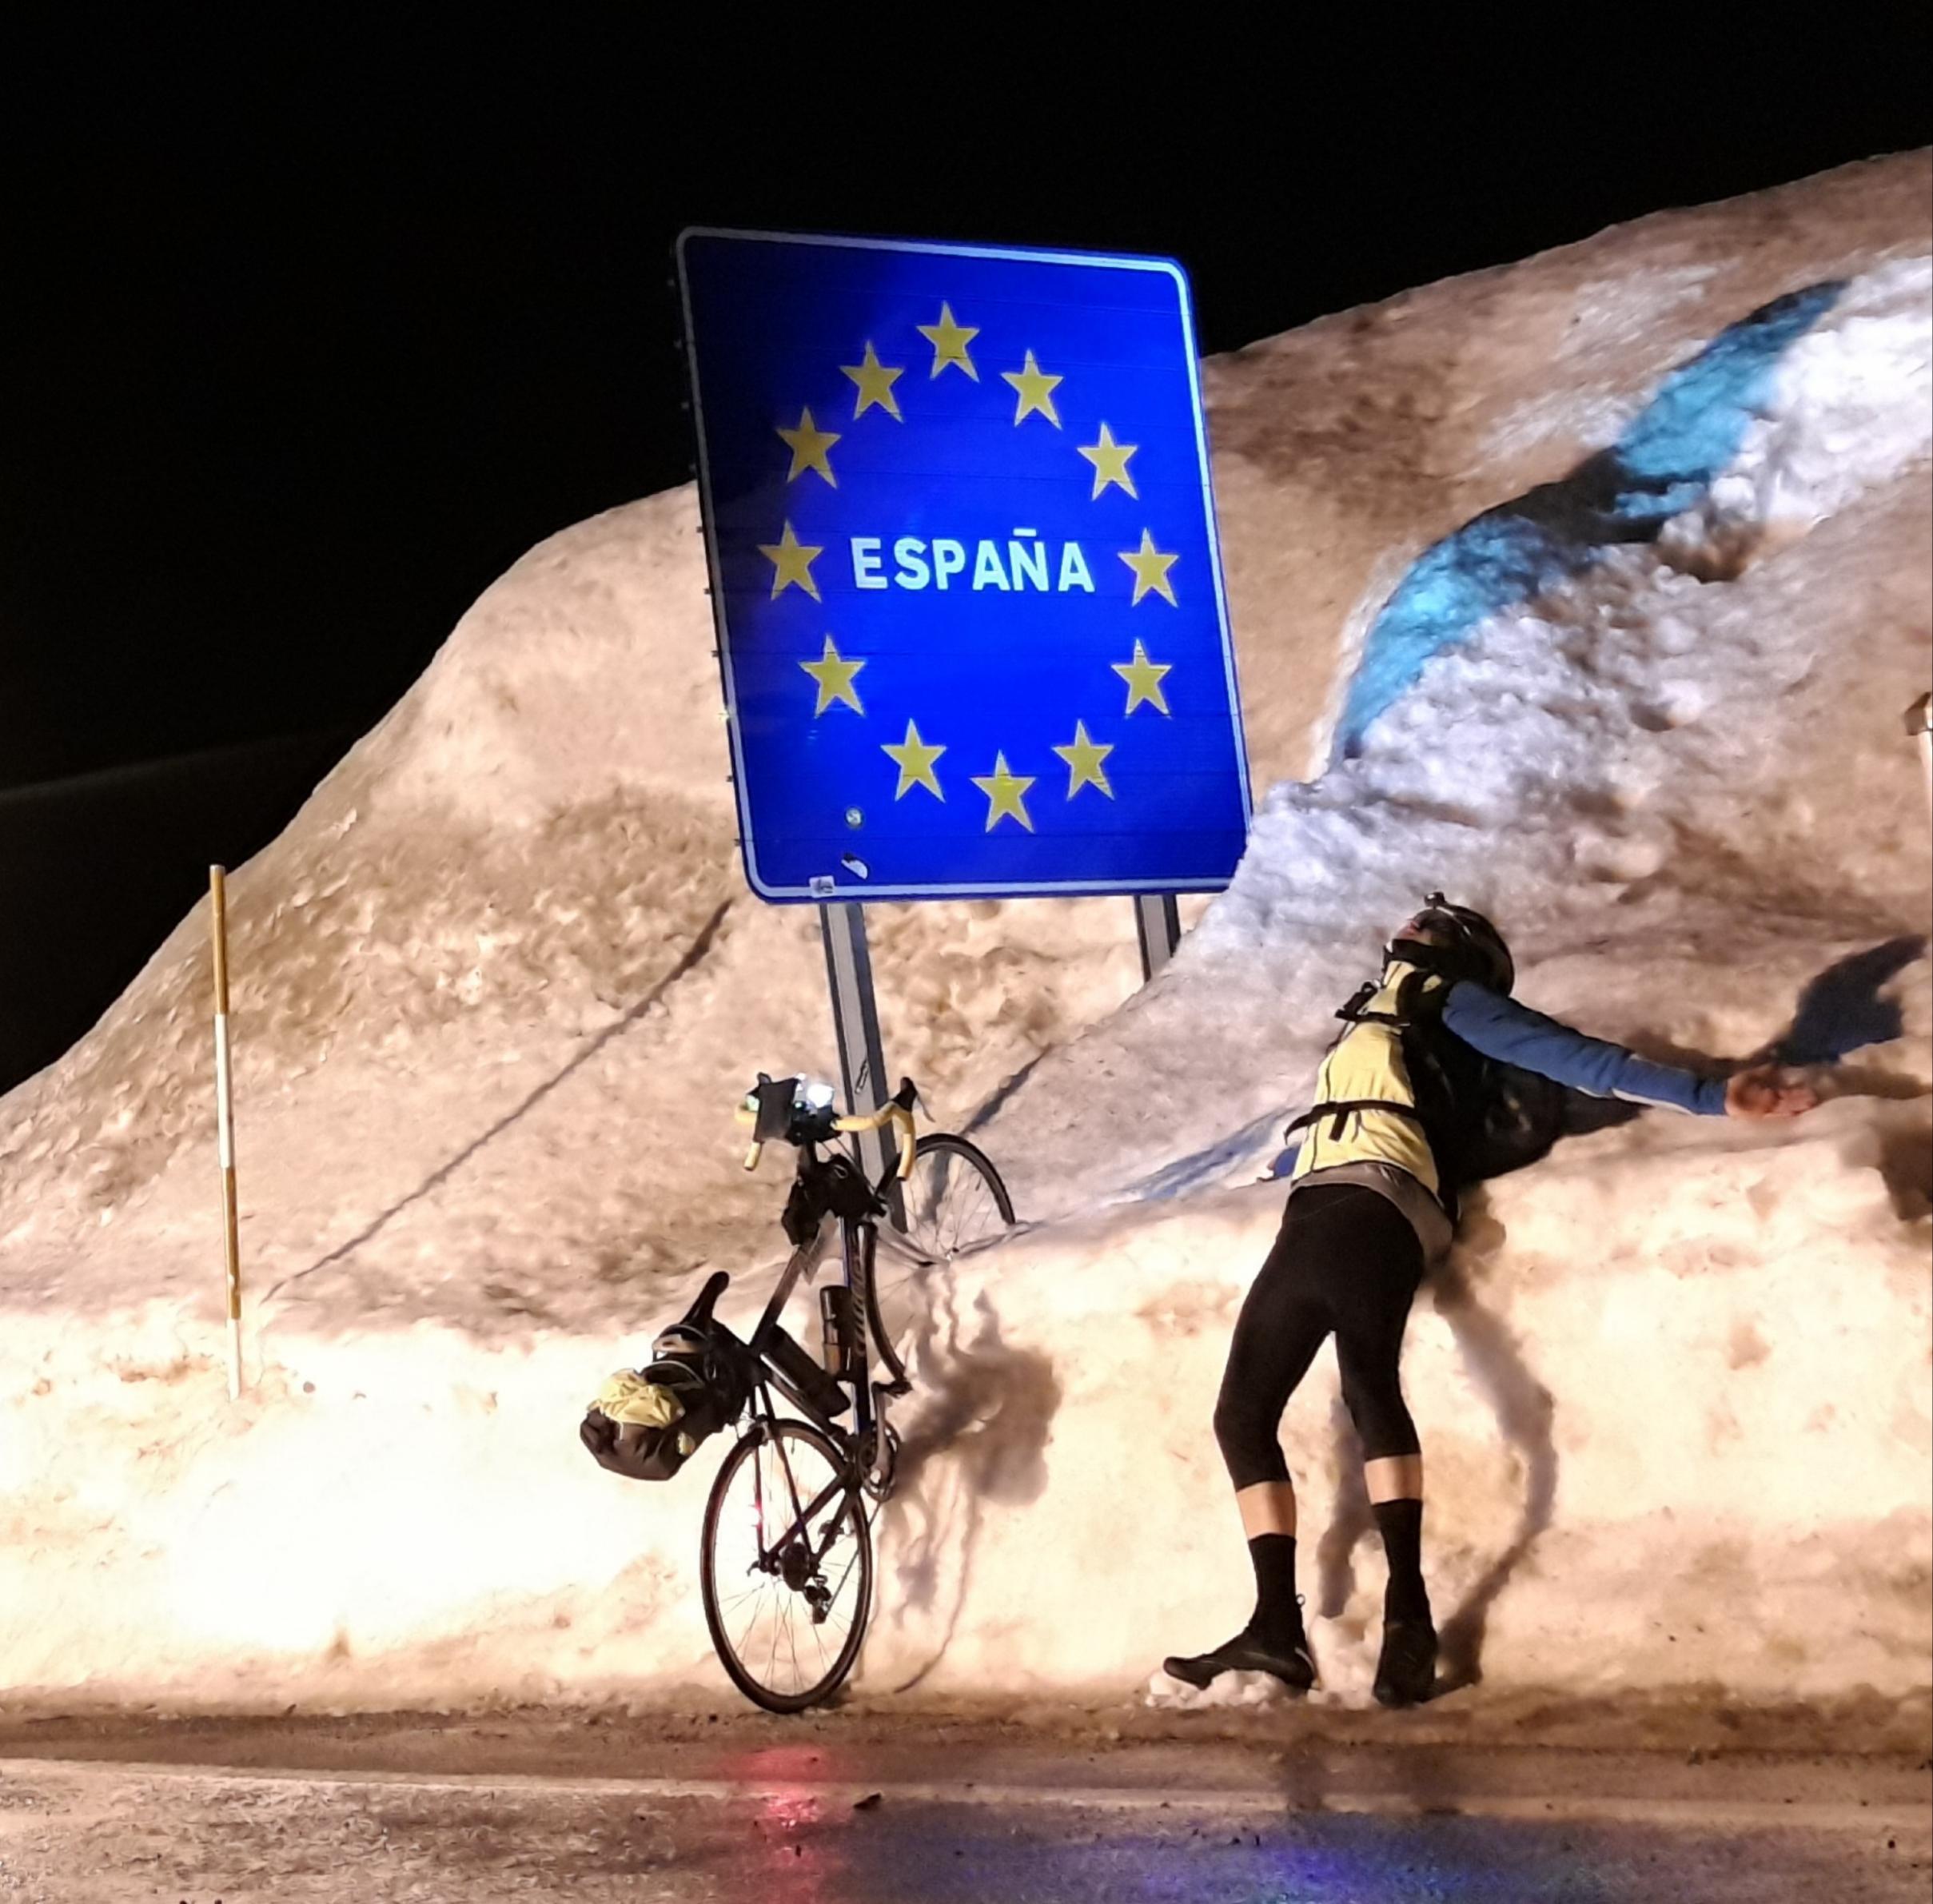 Der Reporter hat das Vorderrad seines Vehikels in den meterhohen Schnee am Straßenrand gesteckt, aus dem das EU-Landesgrenzen-Schild von Spanien herausragt. Er selbst liegt, den Kopf in den Schnee gedrückt, rücklings vor dem Grenzschild.